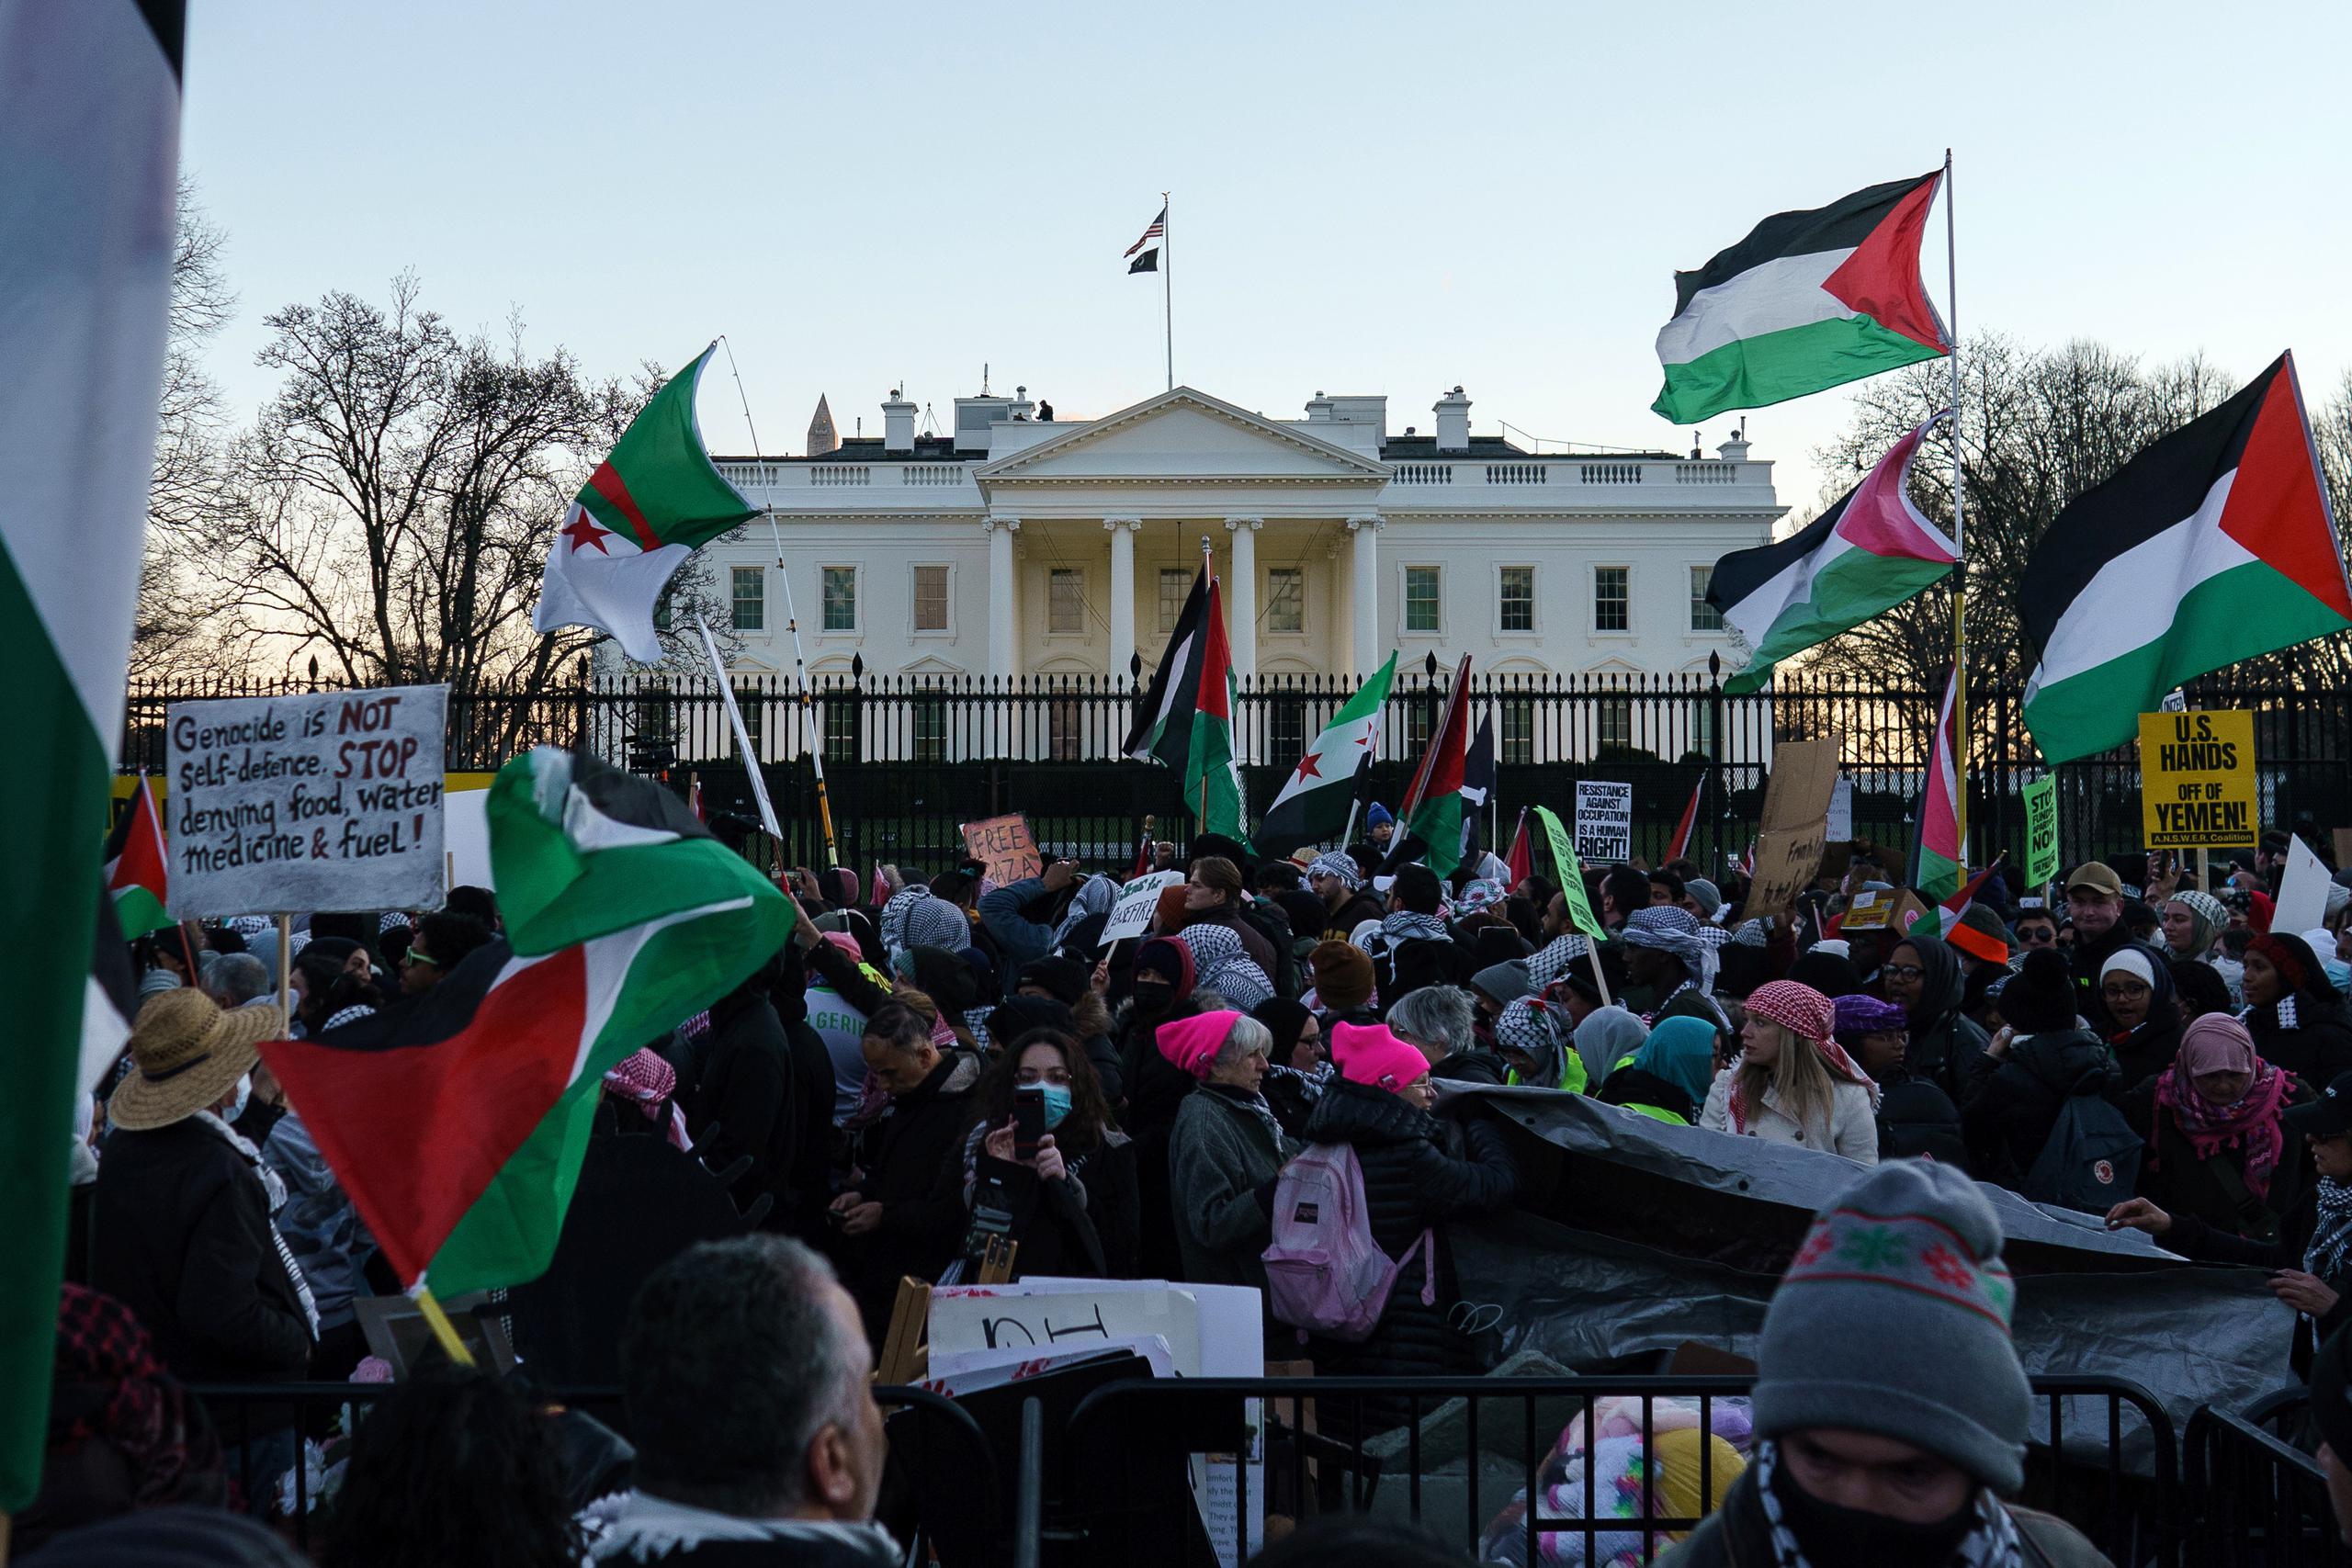 Ondeando banderas de Palestina, pañuelos y carteles, la multitud se congregó en el centro de Washington, en la plaza Freedom, a pocas cuadras de la Casa Blanca.